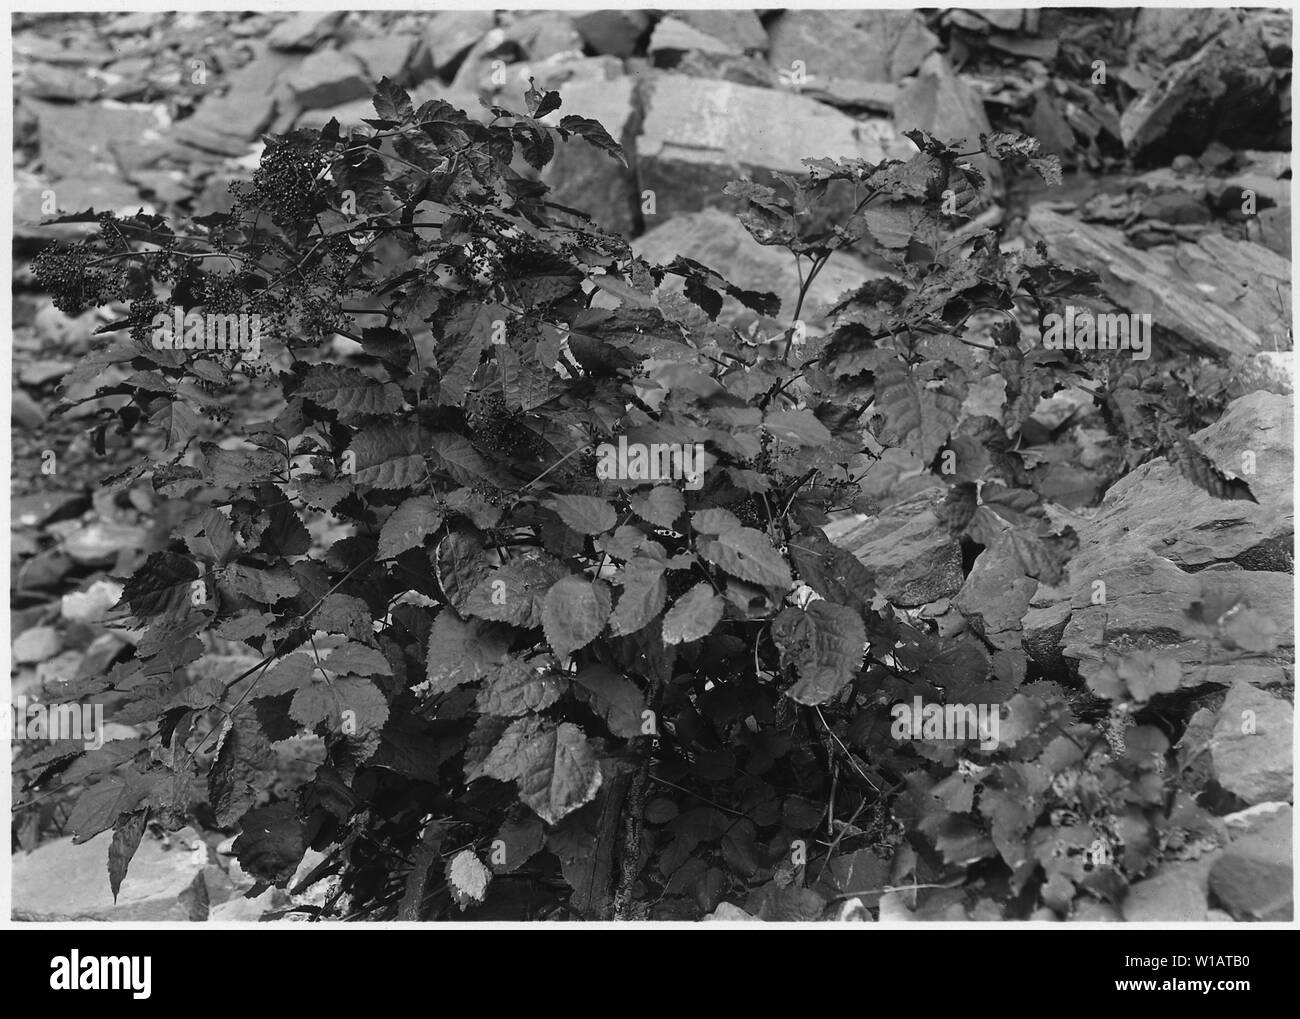 Aralia bicrenata. A rare plant, found in Grotto. Stock Photo